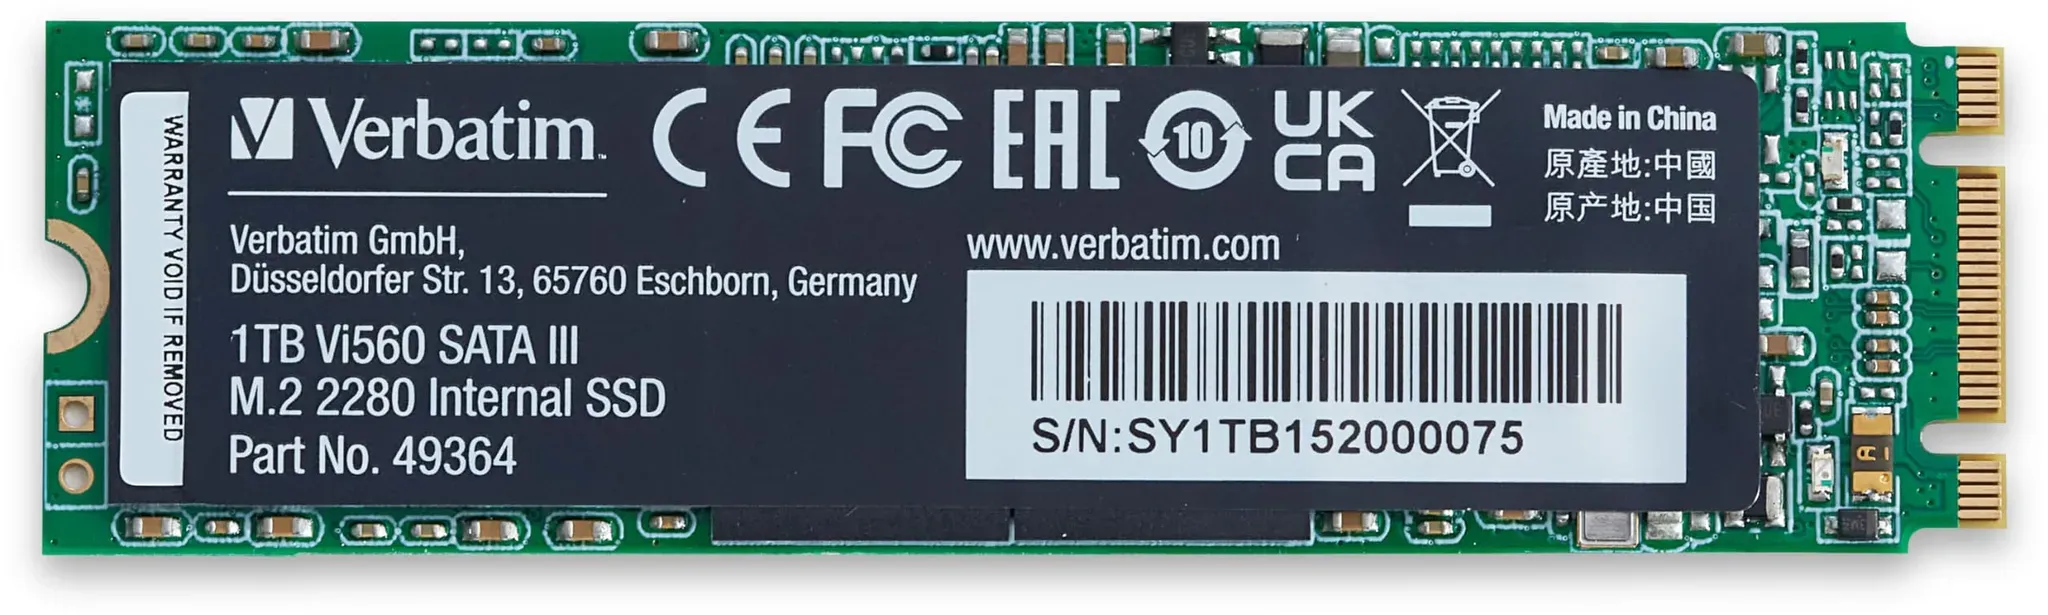 Verbatim Vi560 S3 SSD, internes SSD-Laufwerk mit 1 TB Datenspeicher, Solid State Drive mit SATA III M.2 2280 und 3D-NAND-Technologie, schwarz, ideal für Notebook und Ultrabook